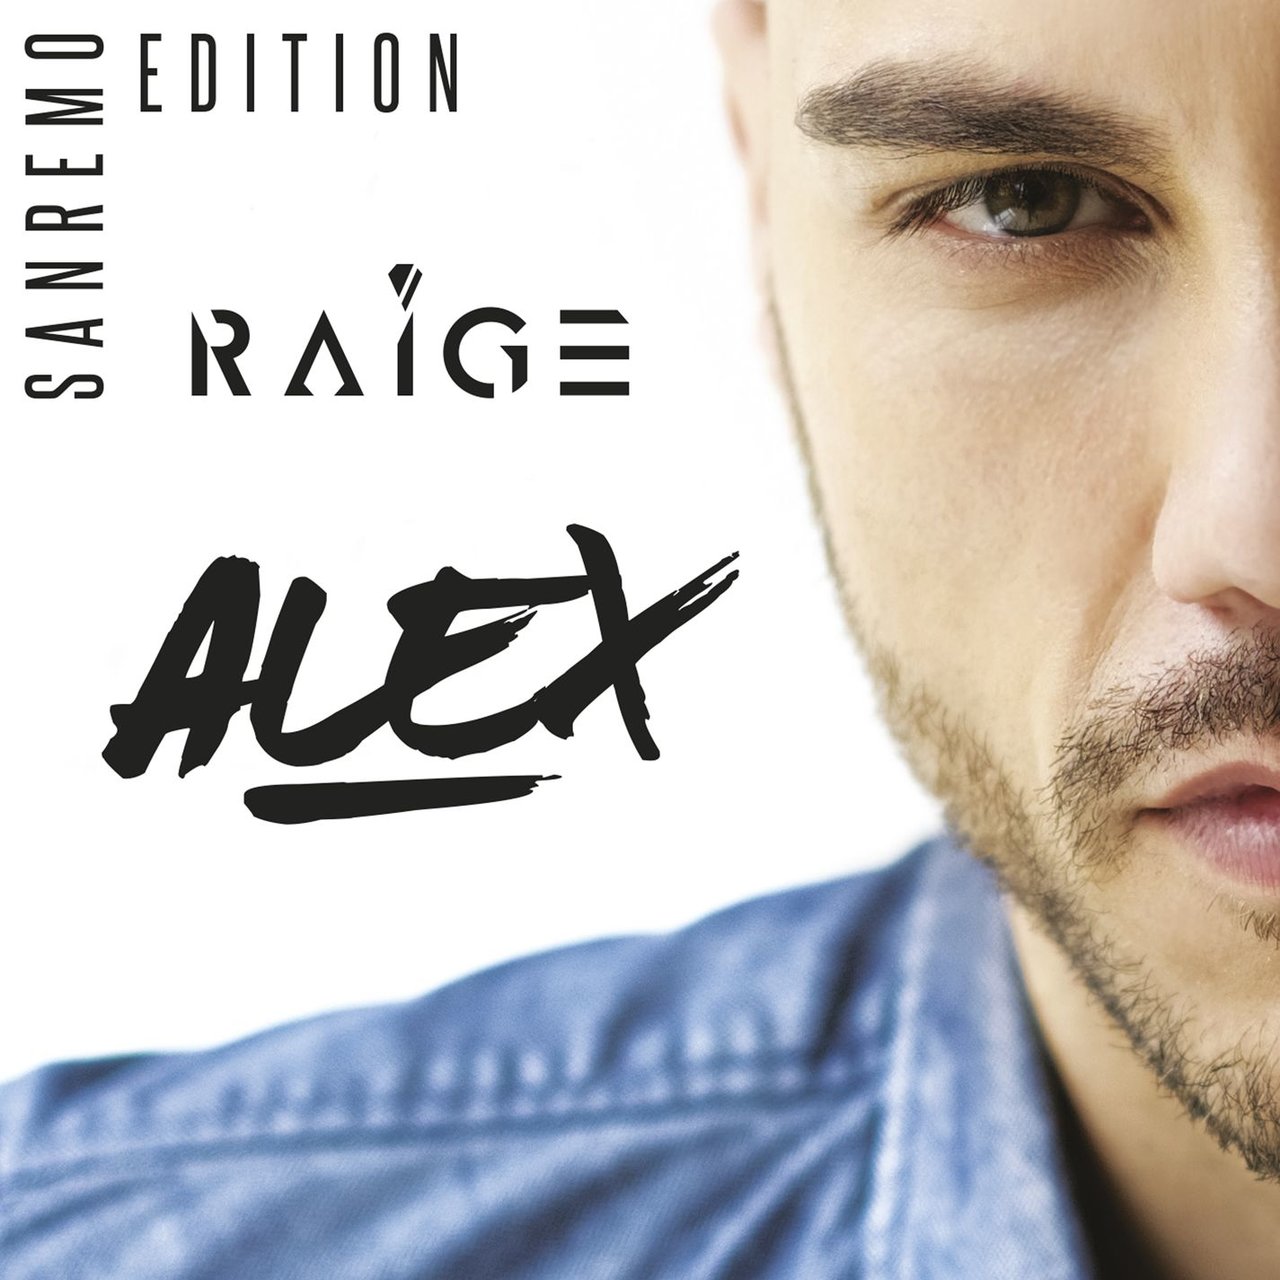 Raige featuring Marco Masini — Il Rumore Che Fa cover artwork